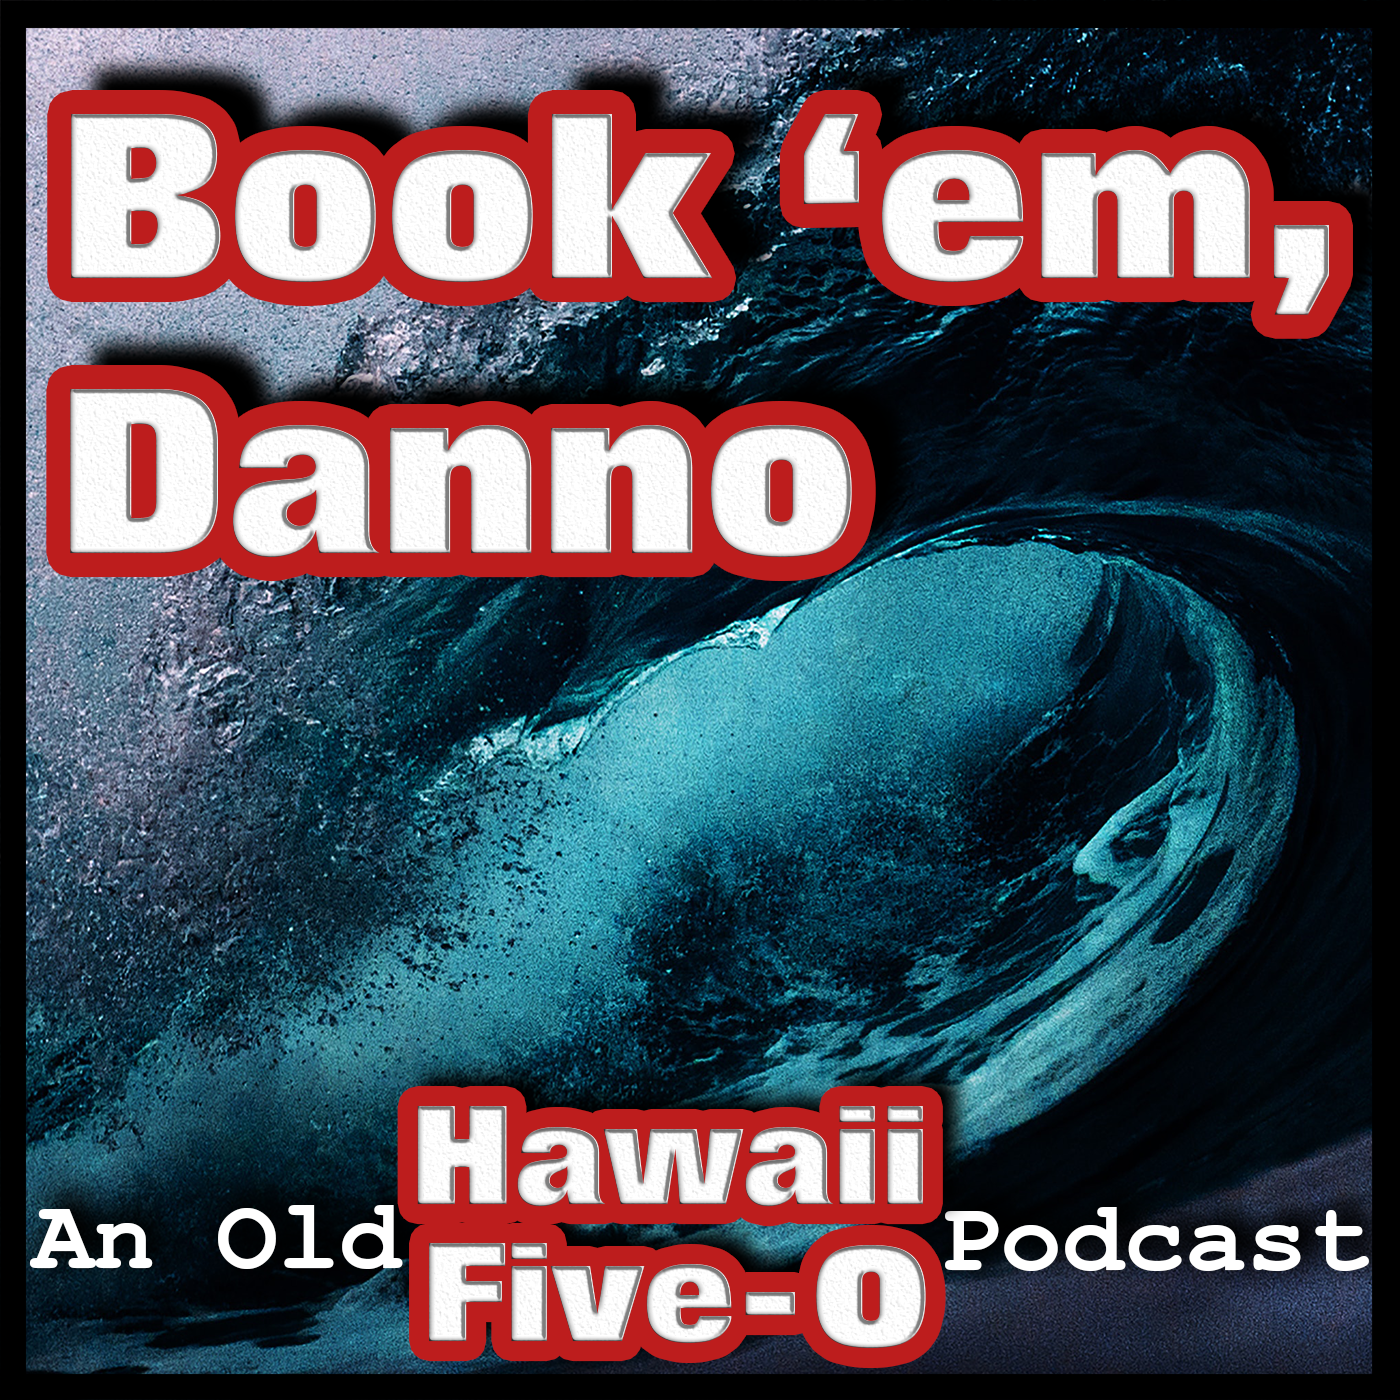 Book 'em Danno Podcast